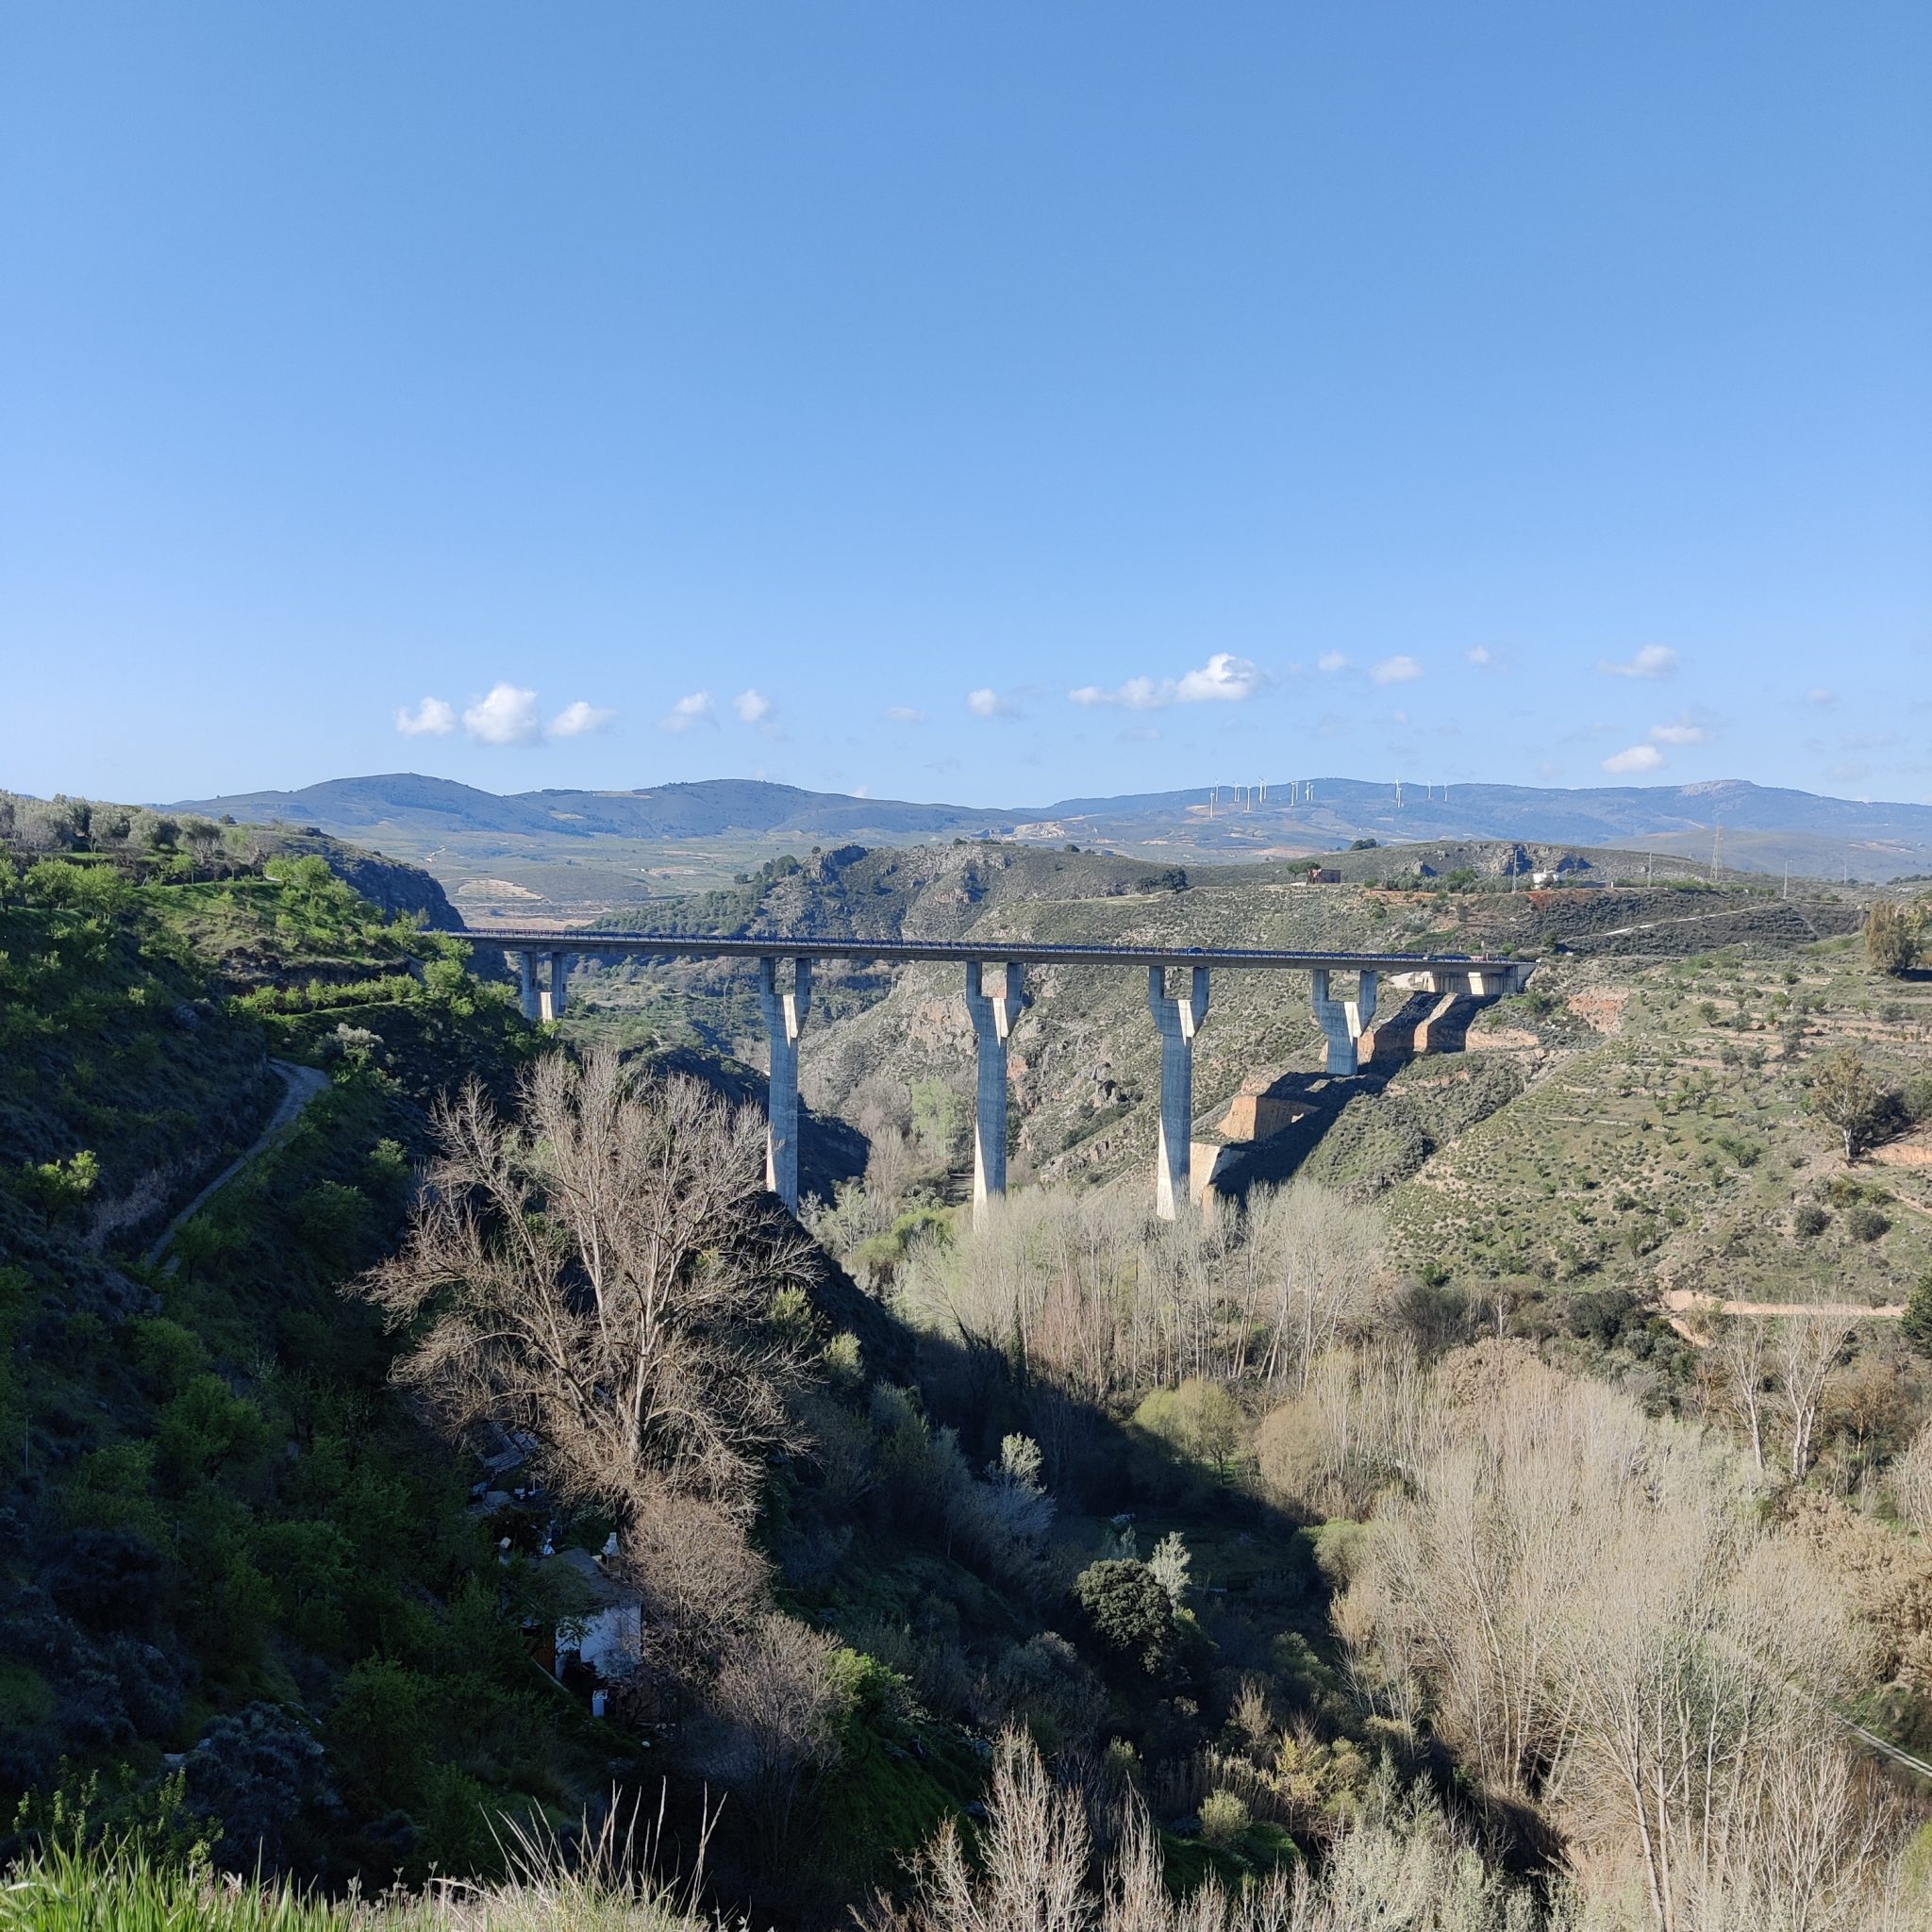 Bridge over a valley